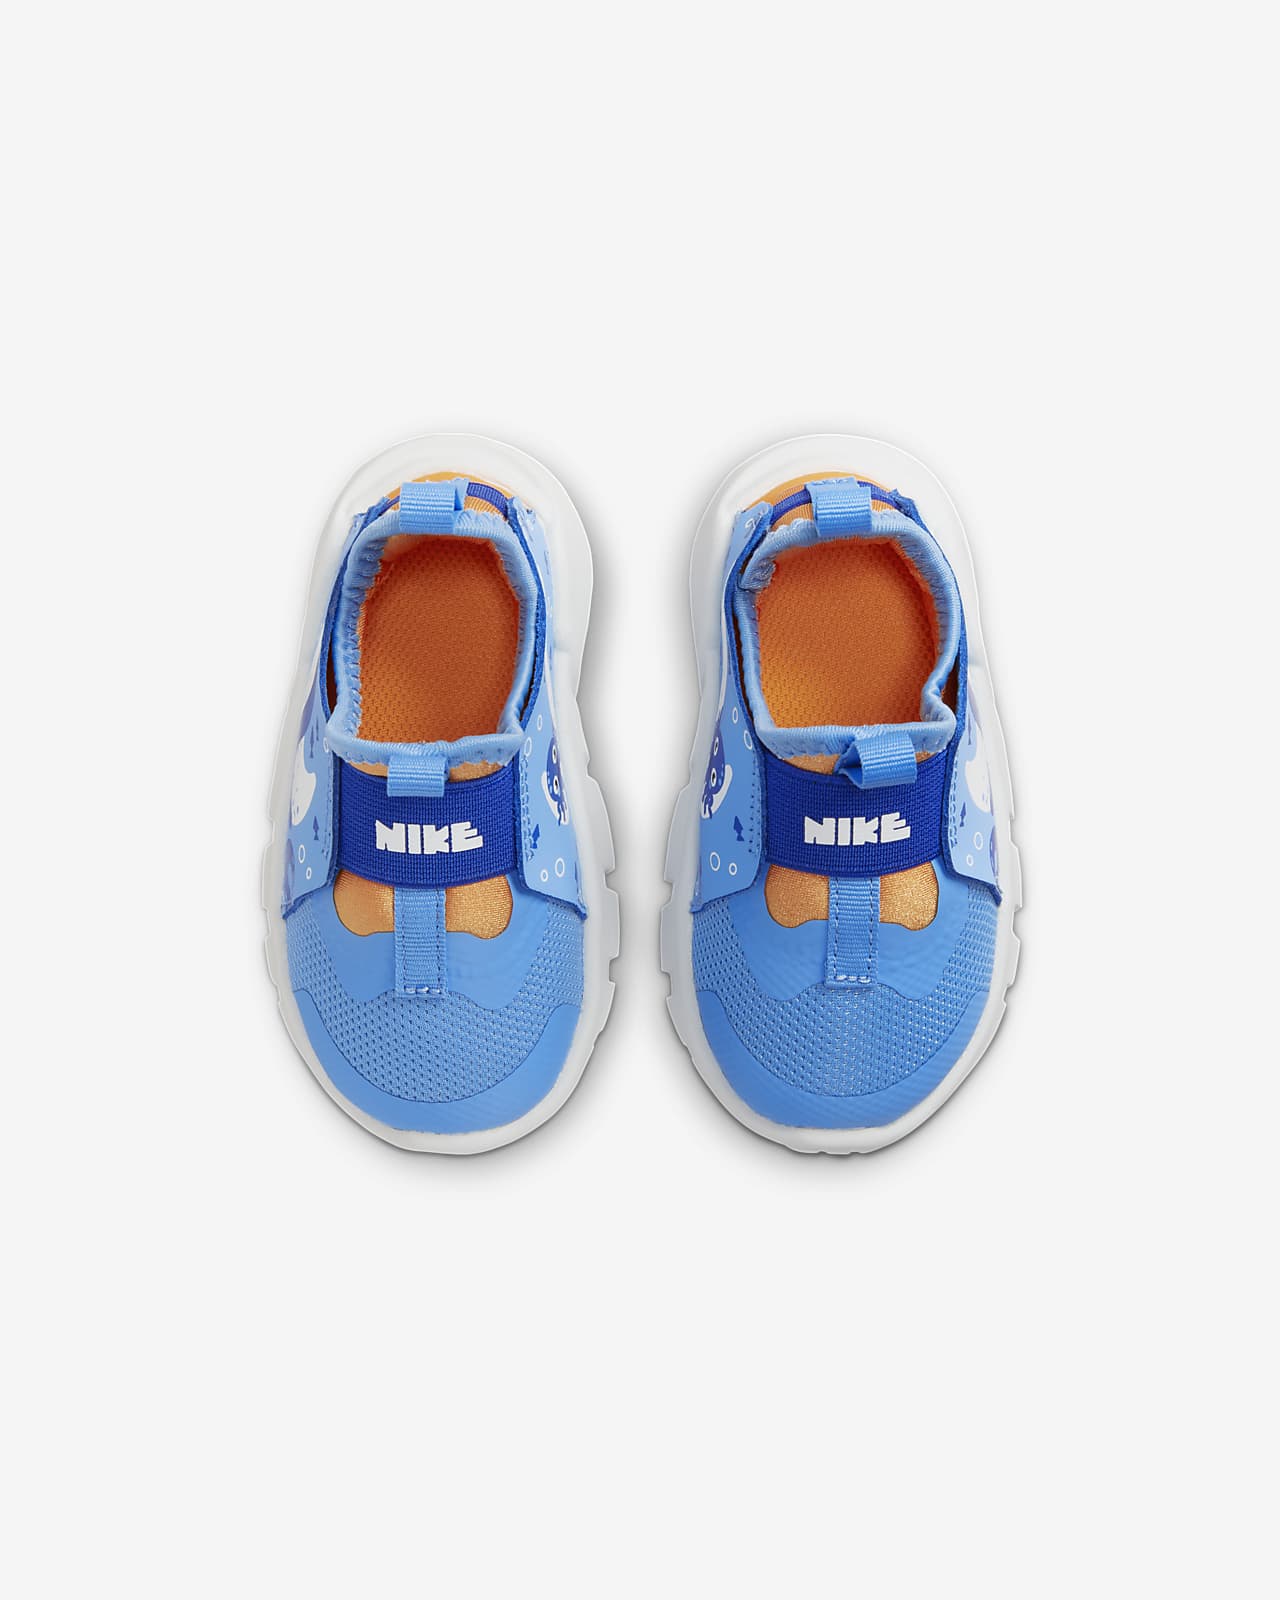 Nike Flex Runner 2 Baby/Toddler Shoes